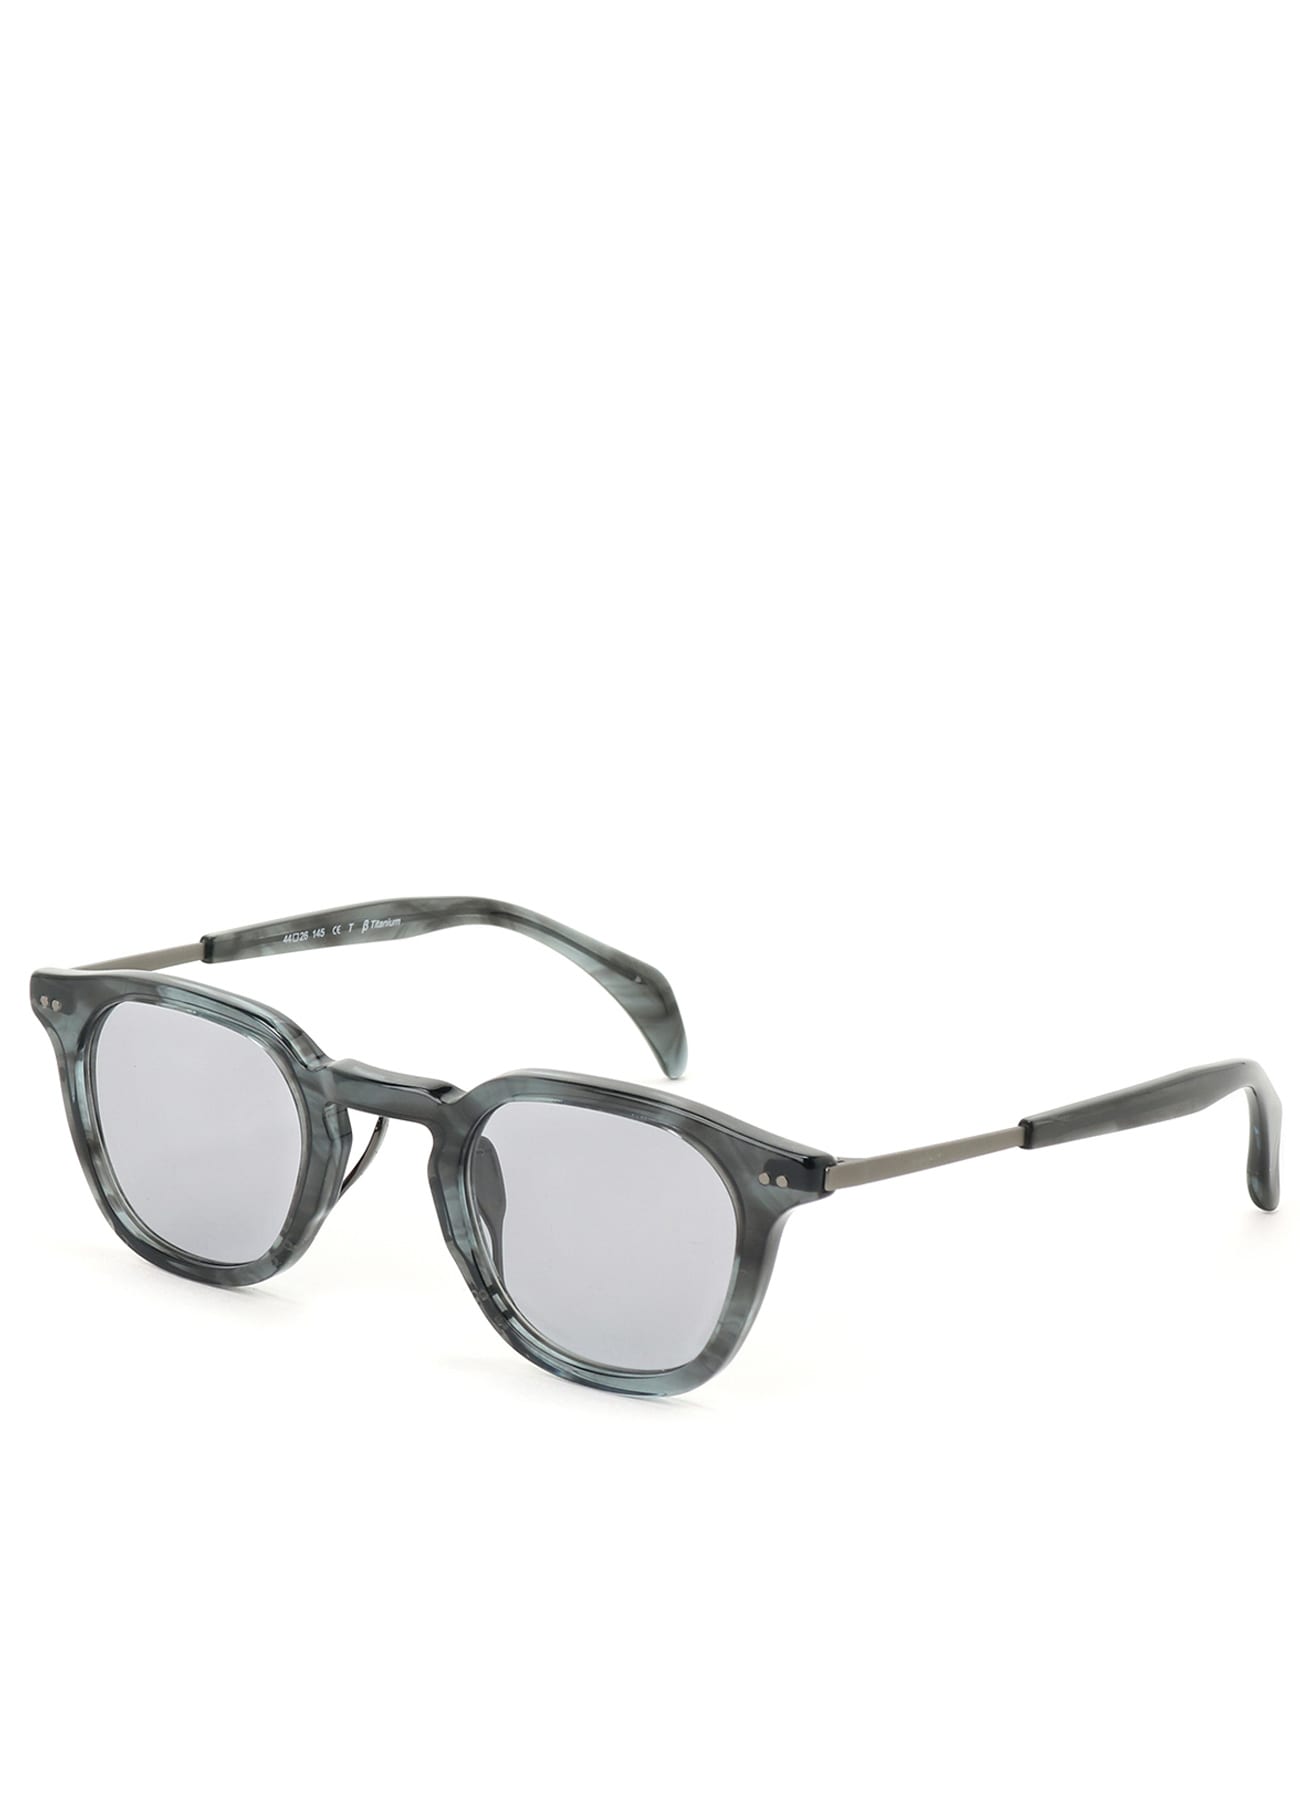 Saint Laurent Sl 28 Square Sunglasses